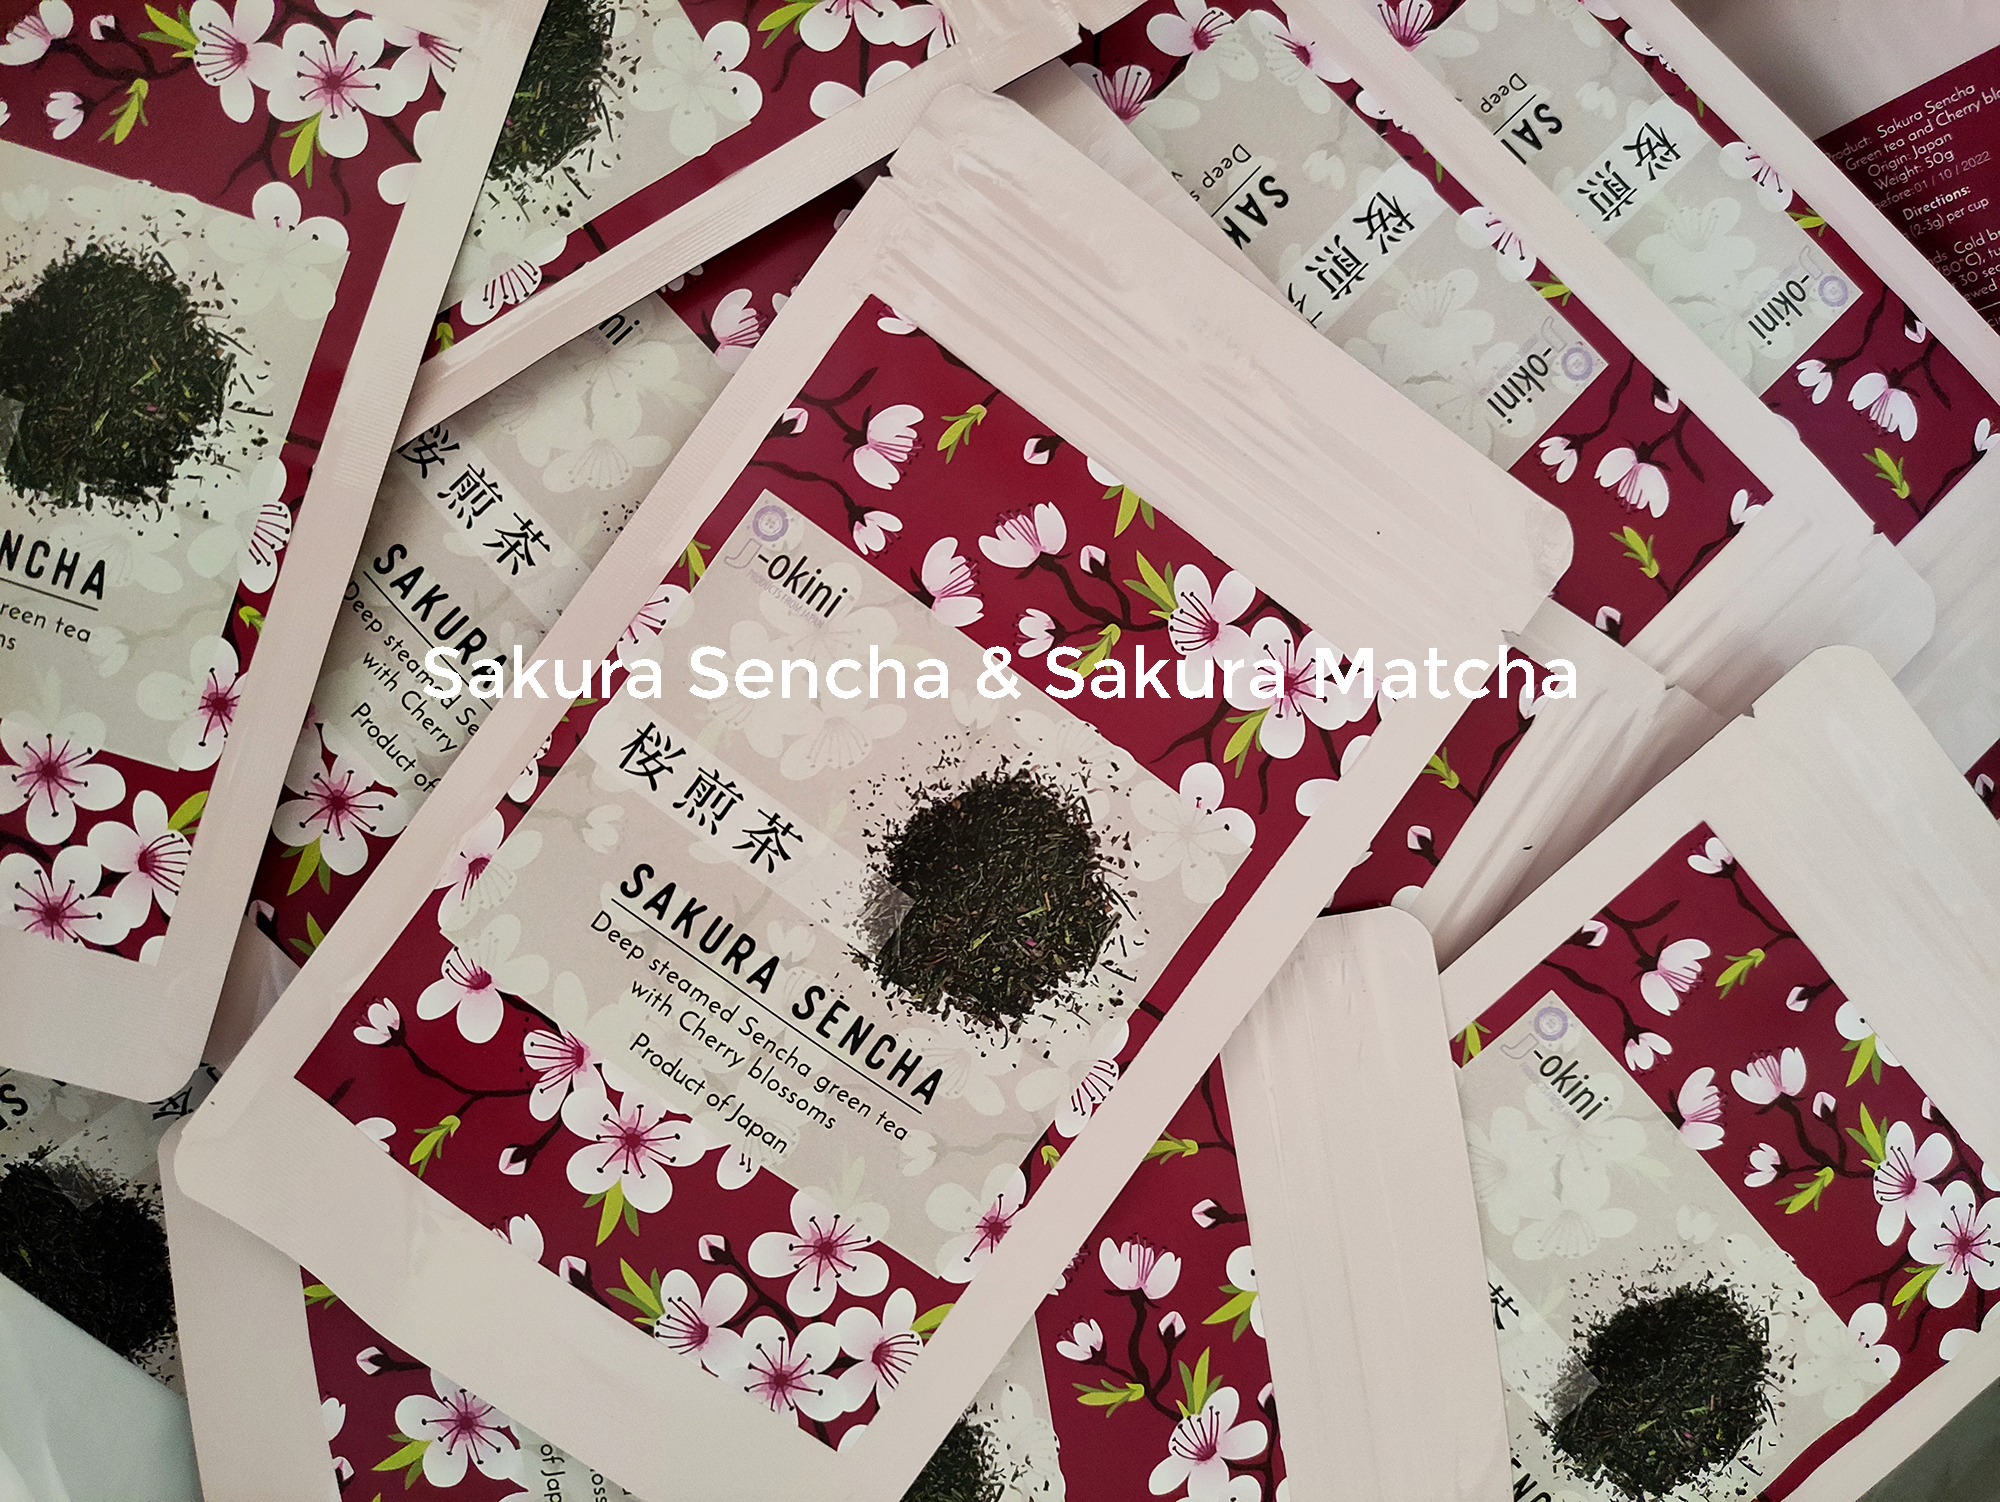 sakura-sencha-packages-2